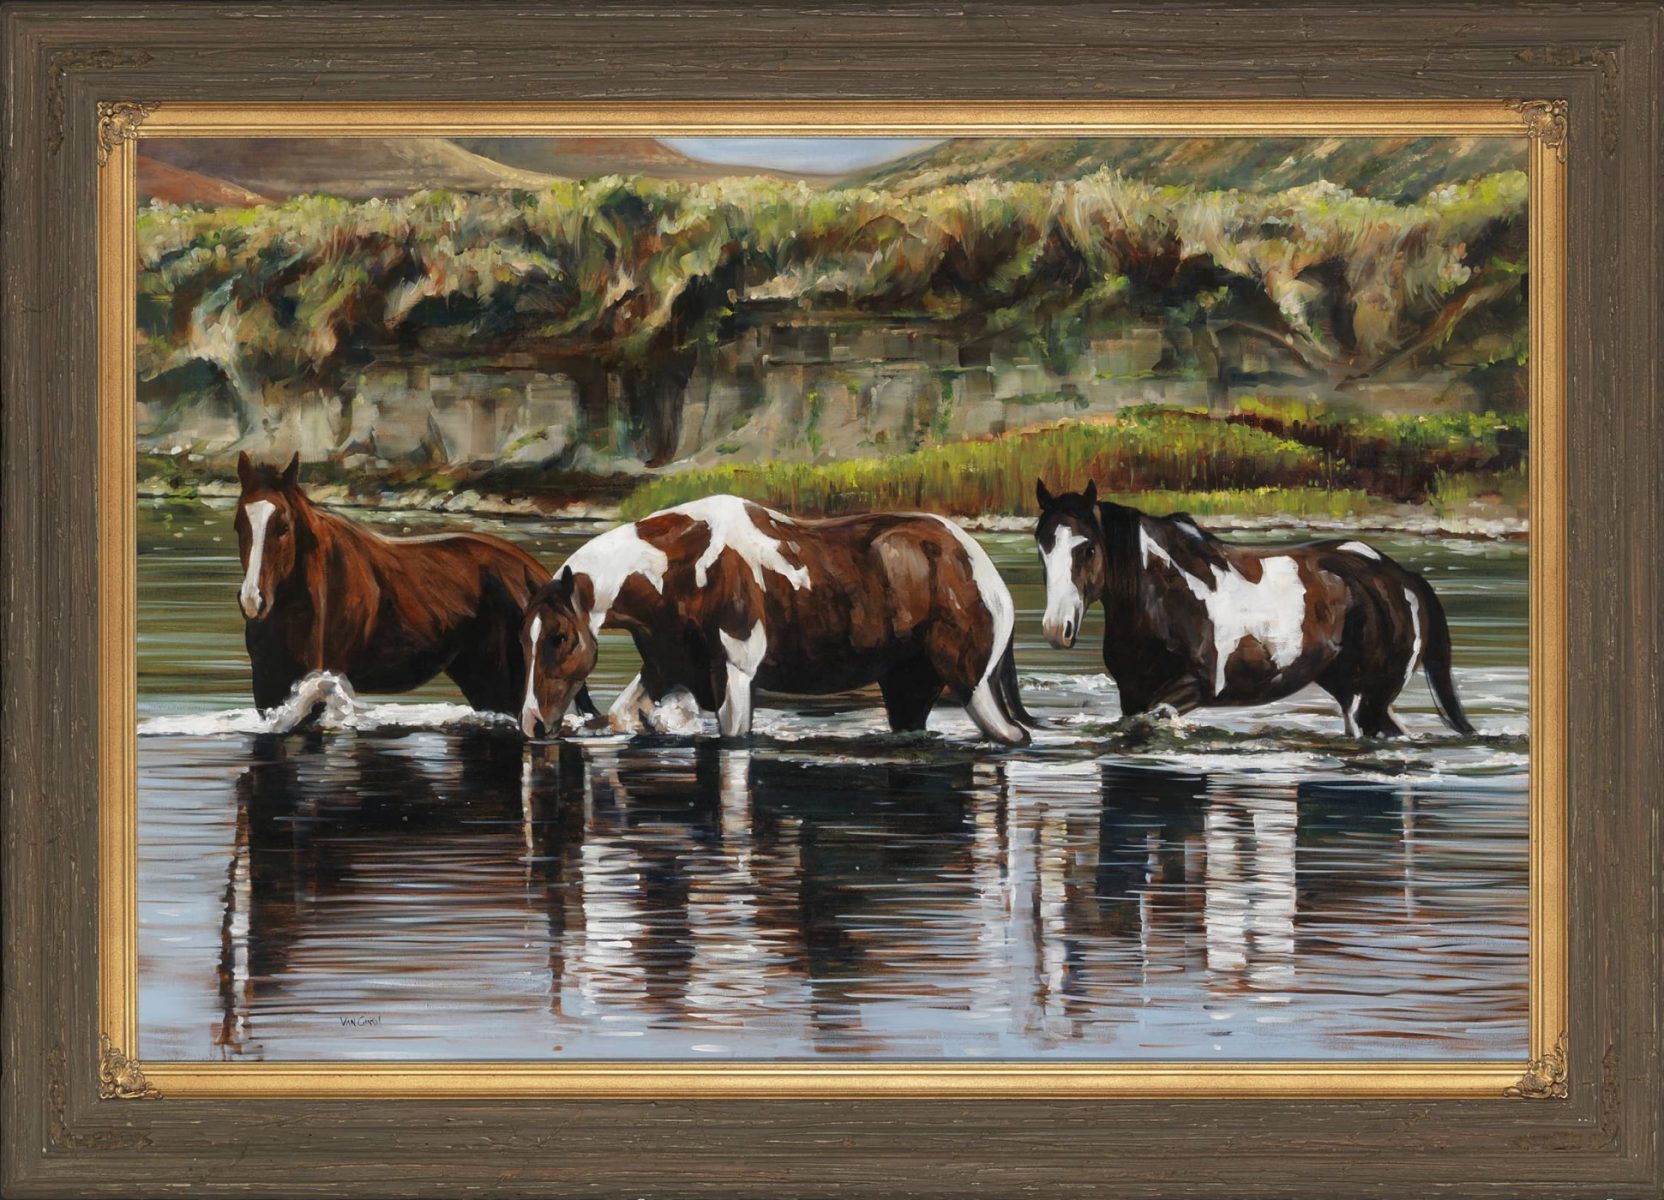 Friendship painting of horses by artist Paul Van Ginkel